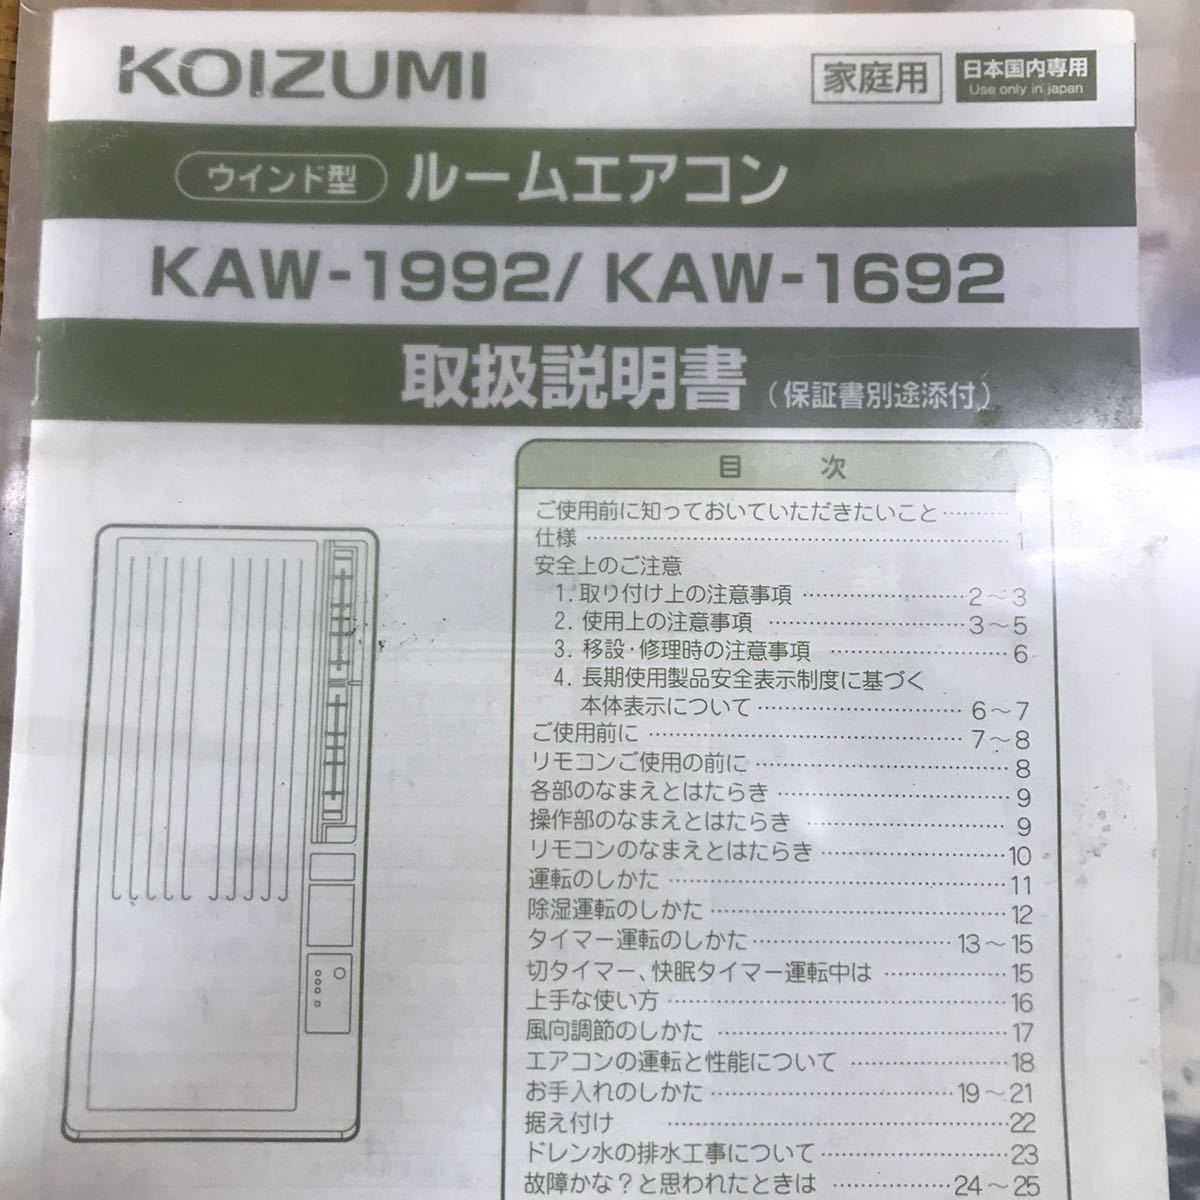 refle* электризация подтверждено KOIZUMI салон кондиционер окно форма охлаждение специальный KAW-1692 2019 год производства с дистанционным пультом на месте самовывоз теплый прием!